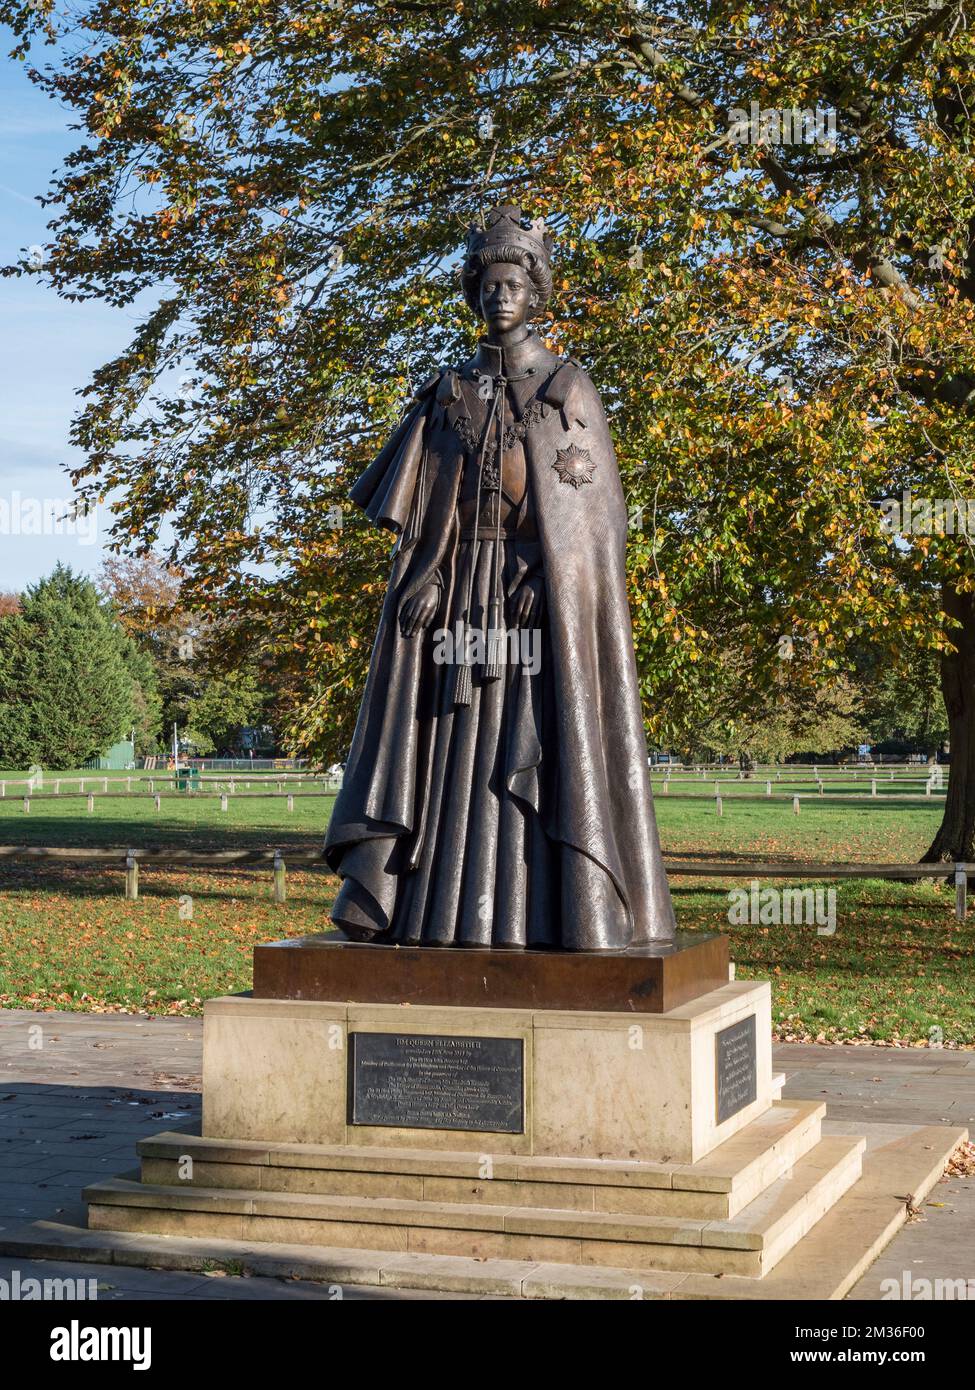 Statue de la Reine Elizabeth II créée par le sculpteur James Butler sur le terrain de plaisance de Runnymede, Runnymede, Royaume-Uni. Banque D'Images